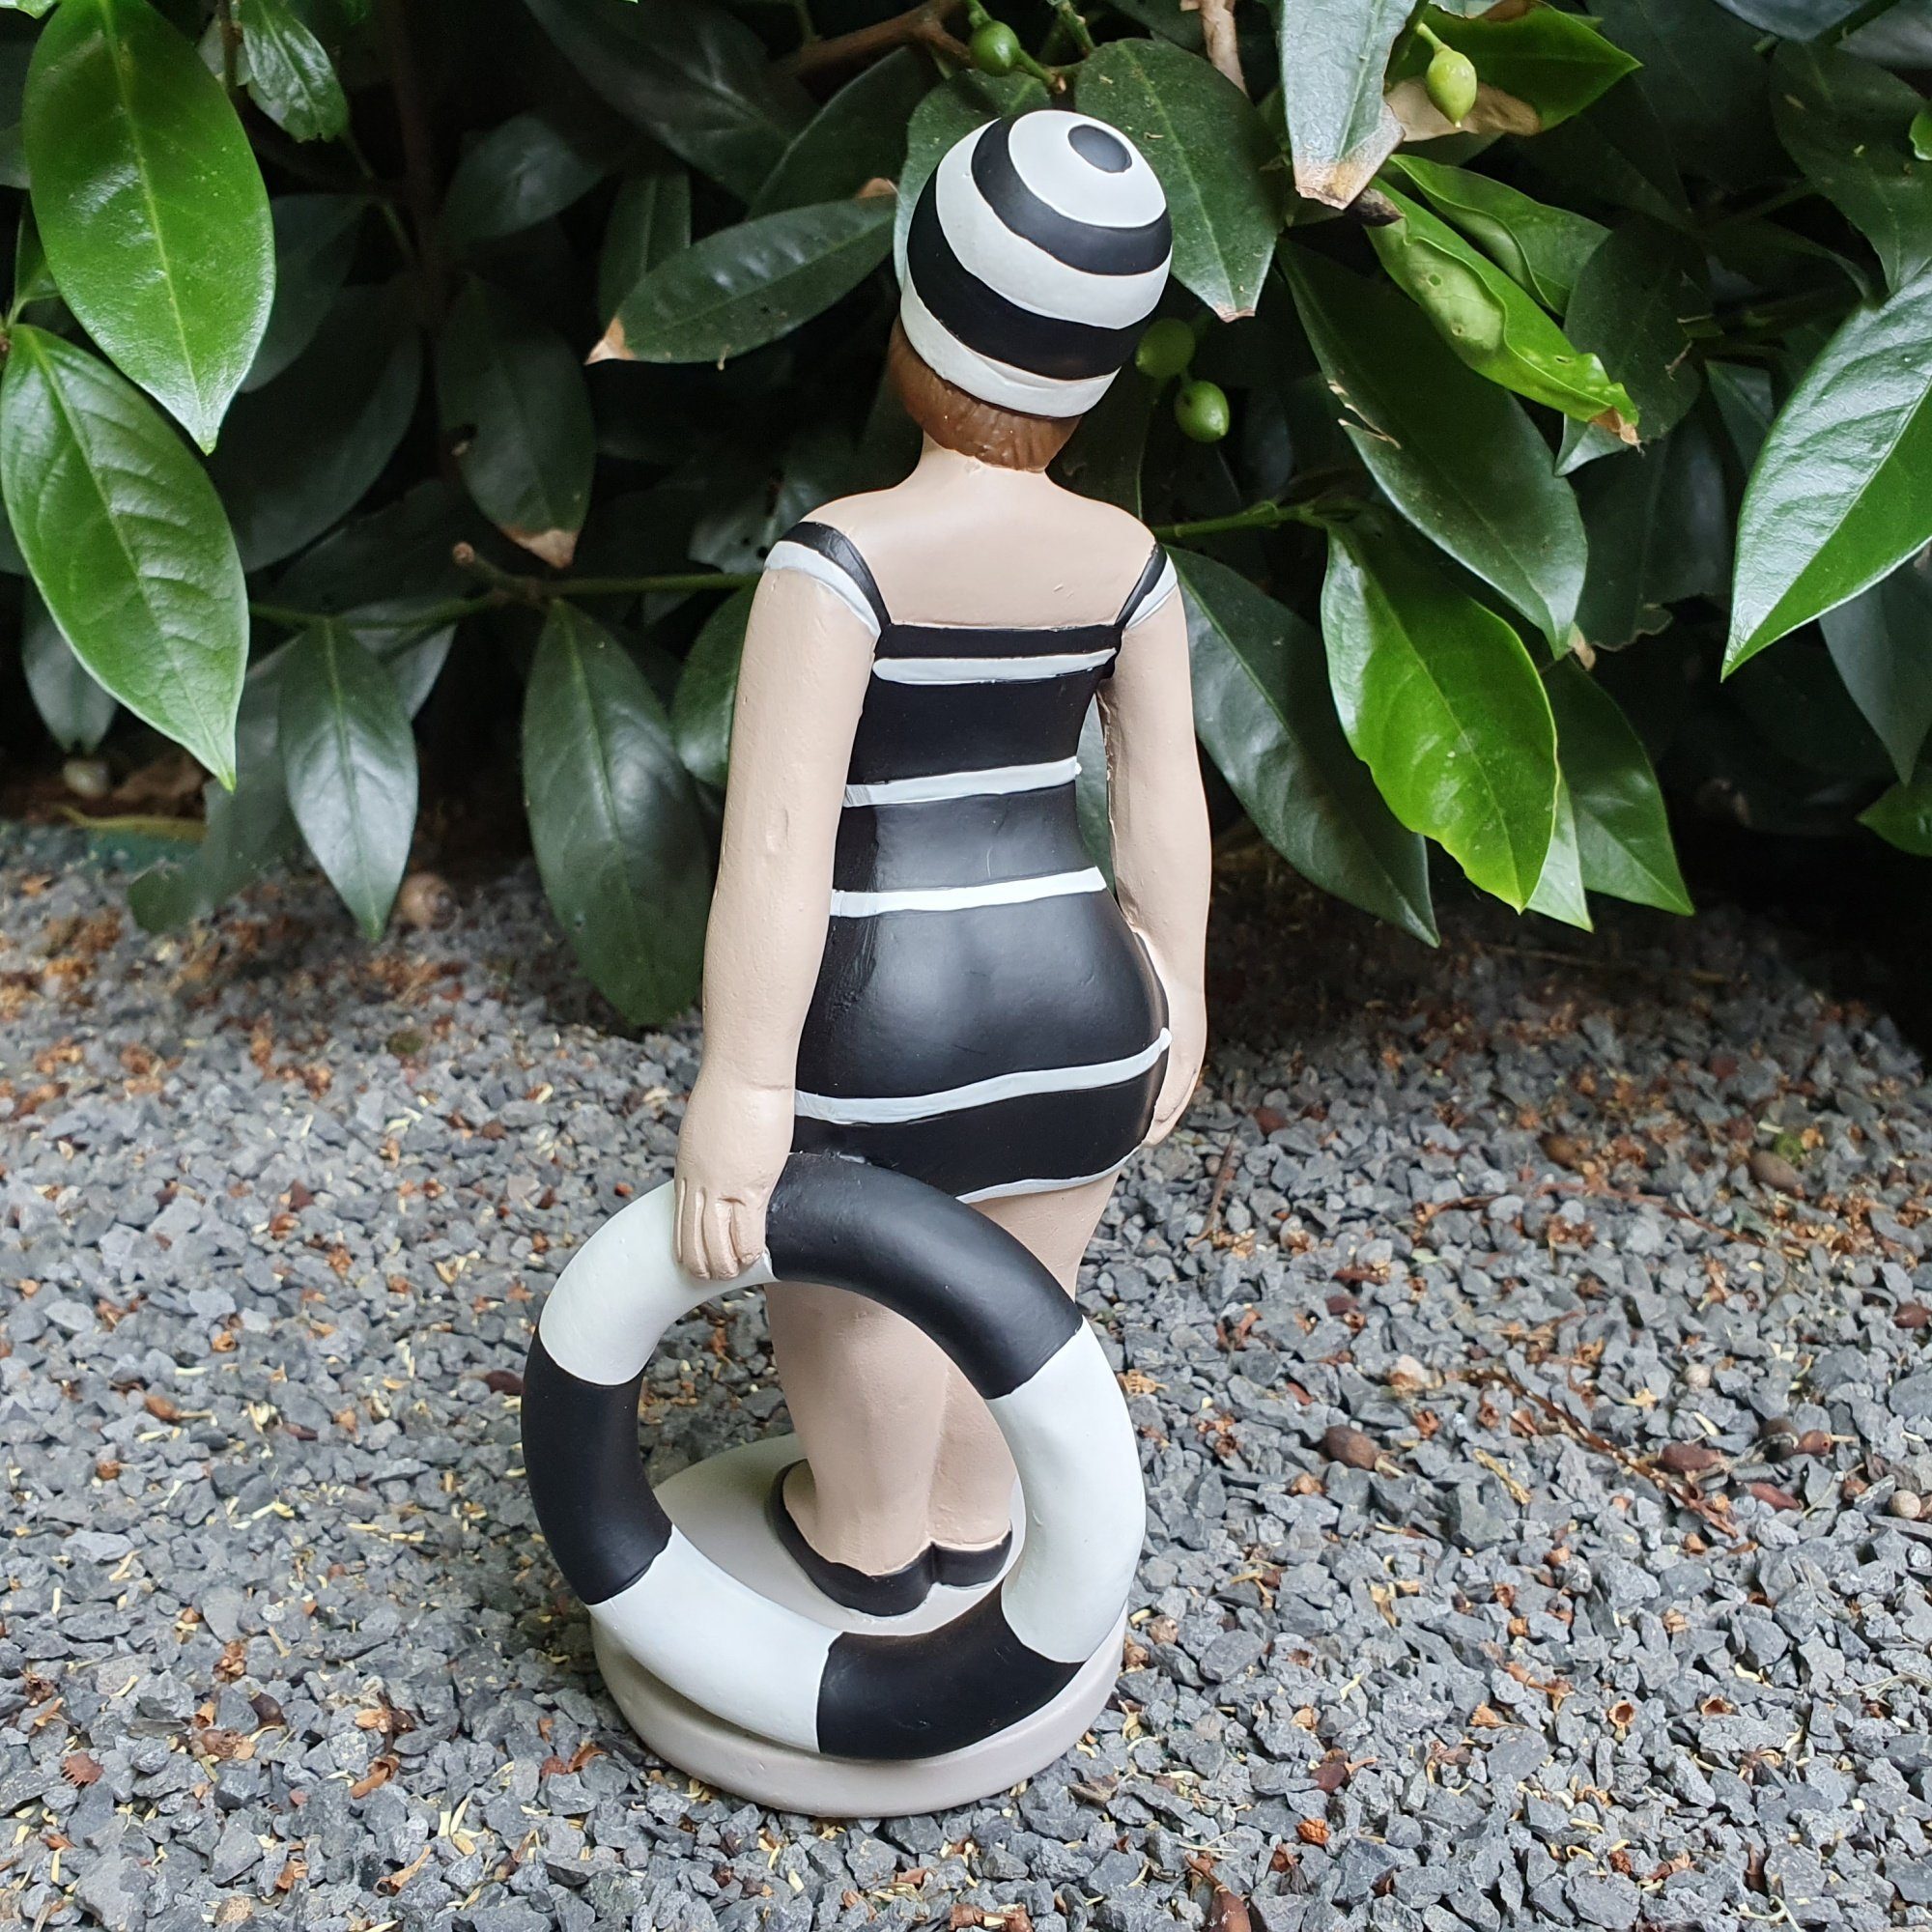 21 cm Figur Stehende Badenixe Gartenfigur Gartendeko Rettungsring Aspinaworld schwarz mit